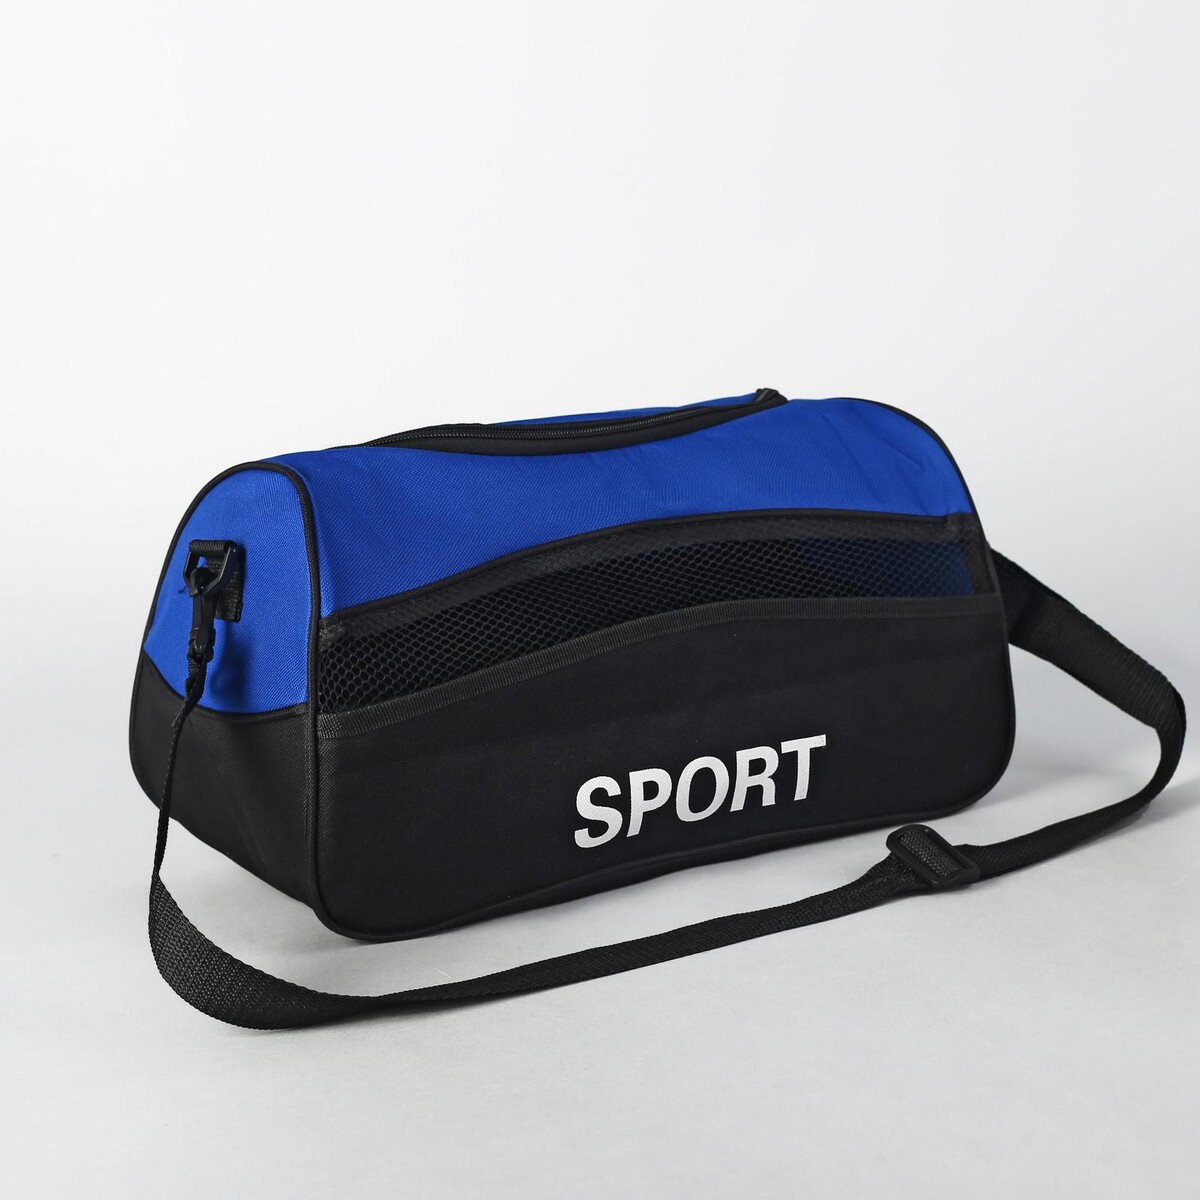 Сумка спортивная на молнии, наружный карман, длинный ремень, цвет синий/черный термосумка на молнии 9 л длинный ремень синий